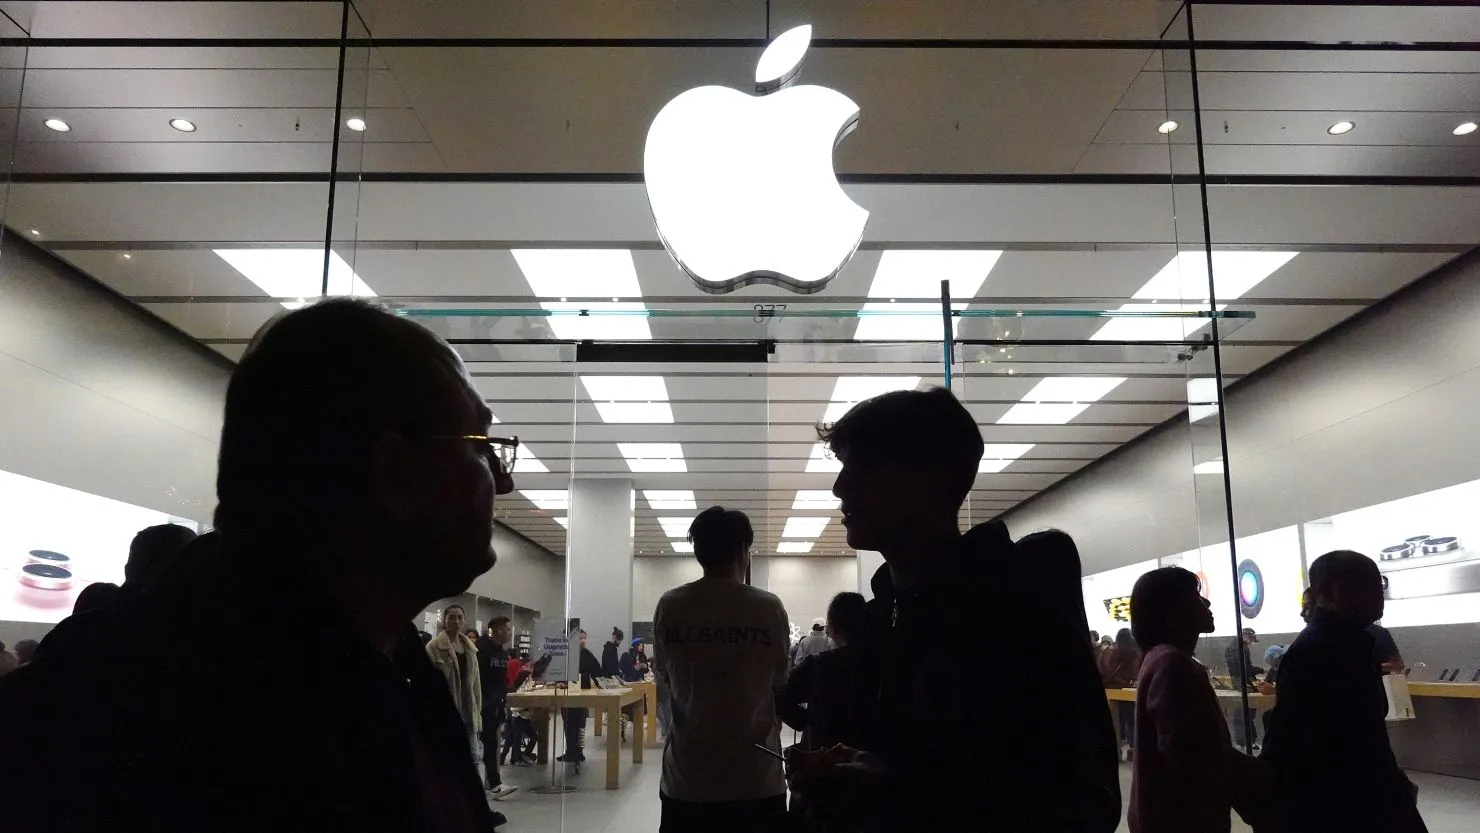 Apple bị kiện vì độc quyền các thiết bị trong hệ sinh thái của mình